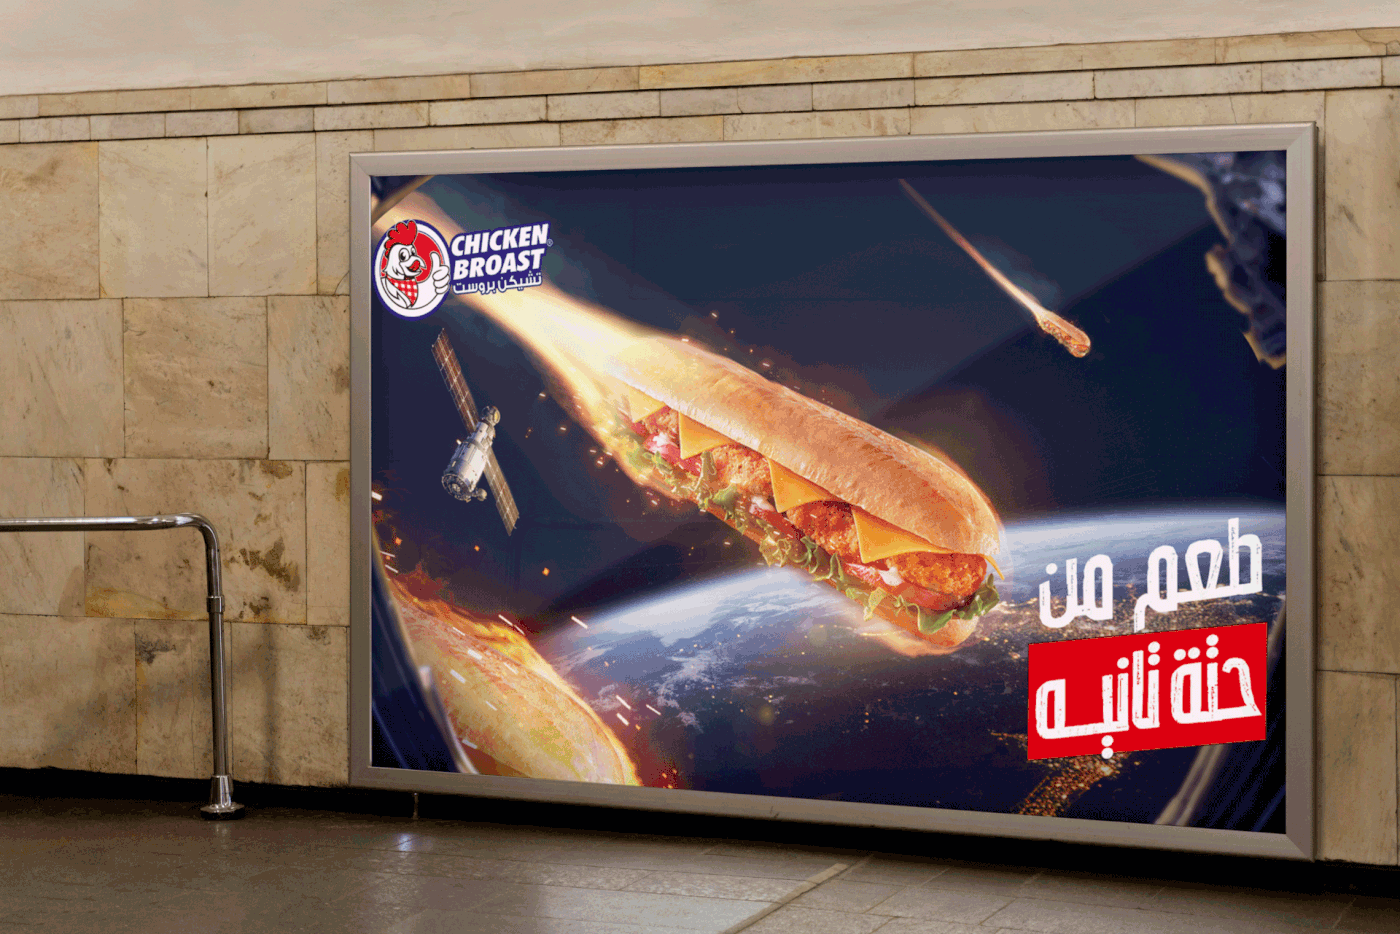 fried chicken fried chicken ads Food  Advertising  designer marketing   restaurant burger Fast food Social media post